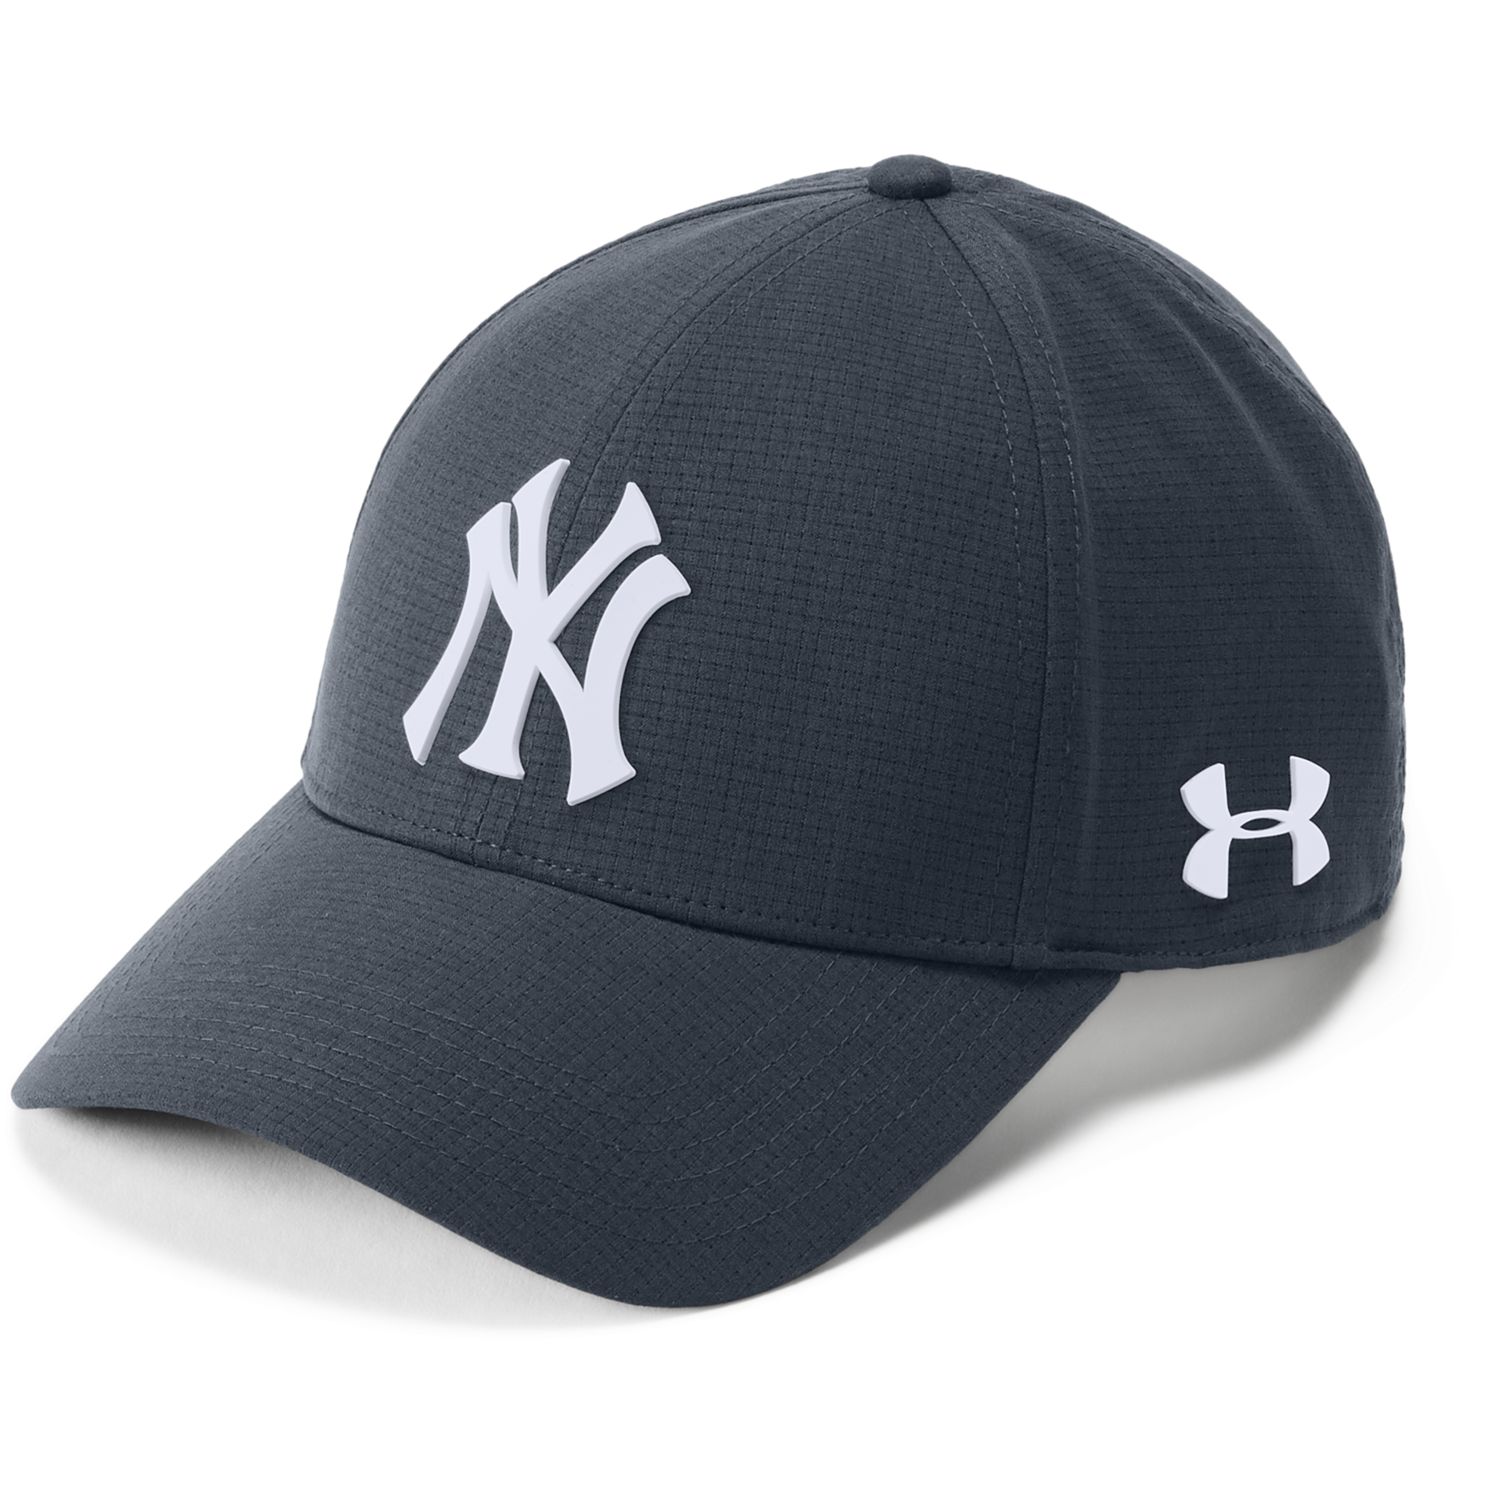 New York Yankees Driving Adjustable Cap